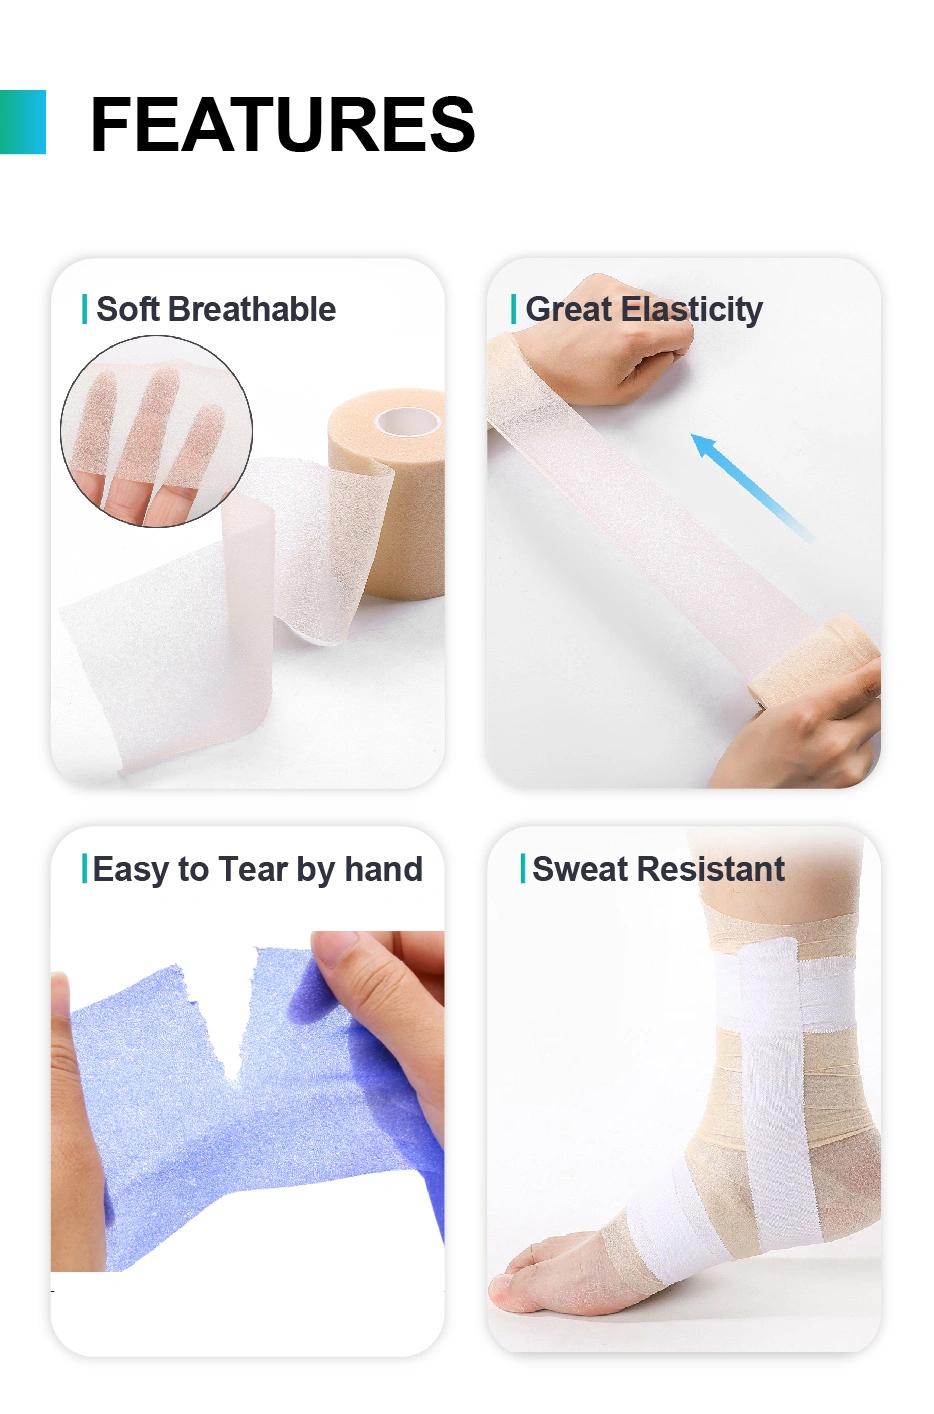 PU Sports Underwrap Pre-Wrap Foam Tape Bandage